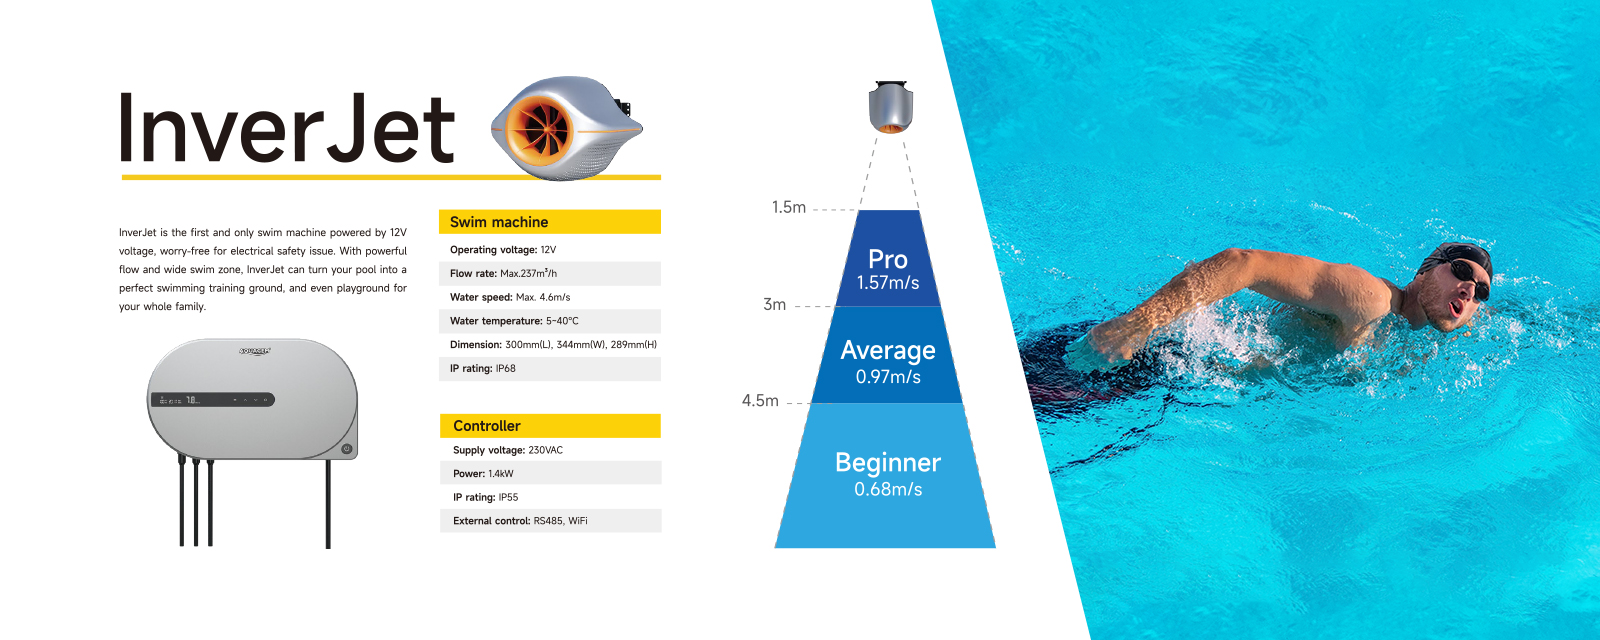 Inverjet-Schwimmbadstrommaschine - Erste und einzige 12VSchwimmmaschine